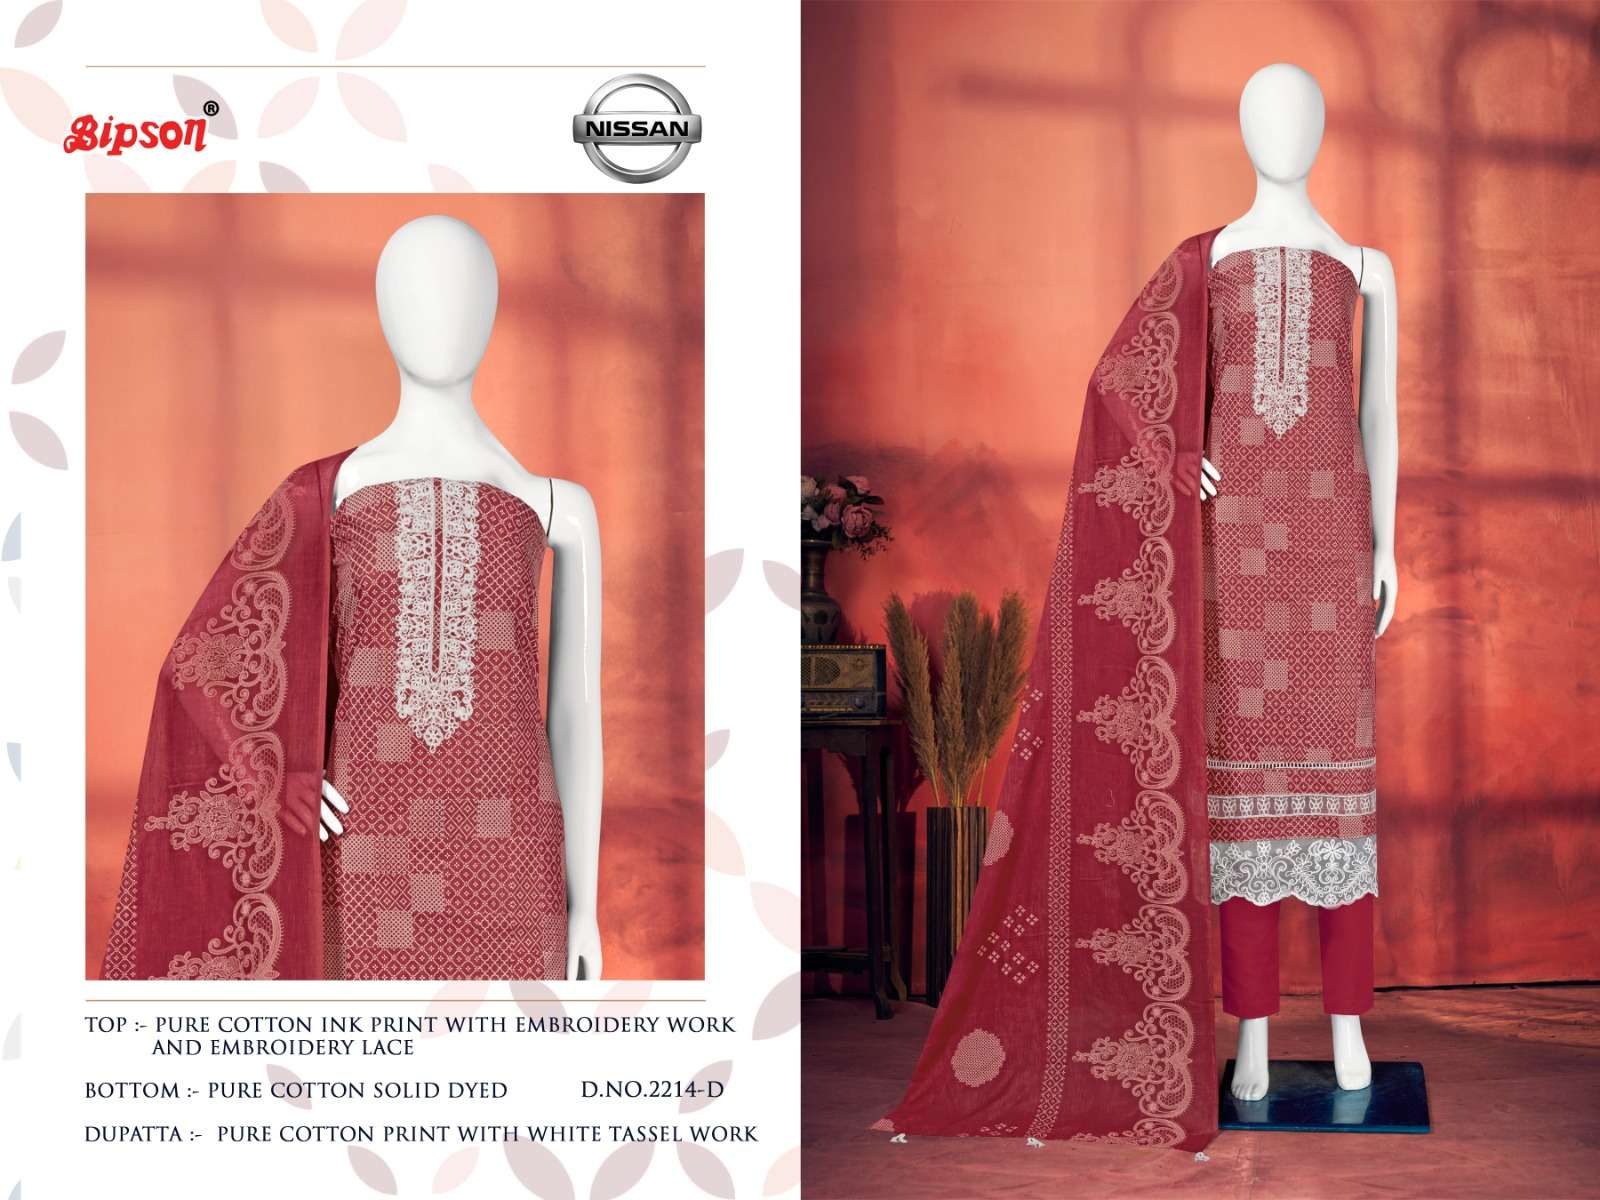 bipson prints nissan 2214 series unstitched designer salwar kameez catalogue design 2023